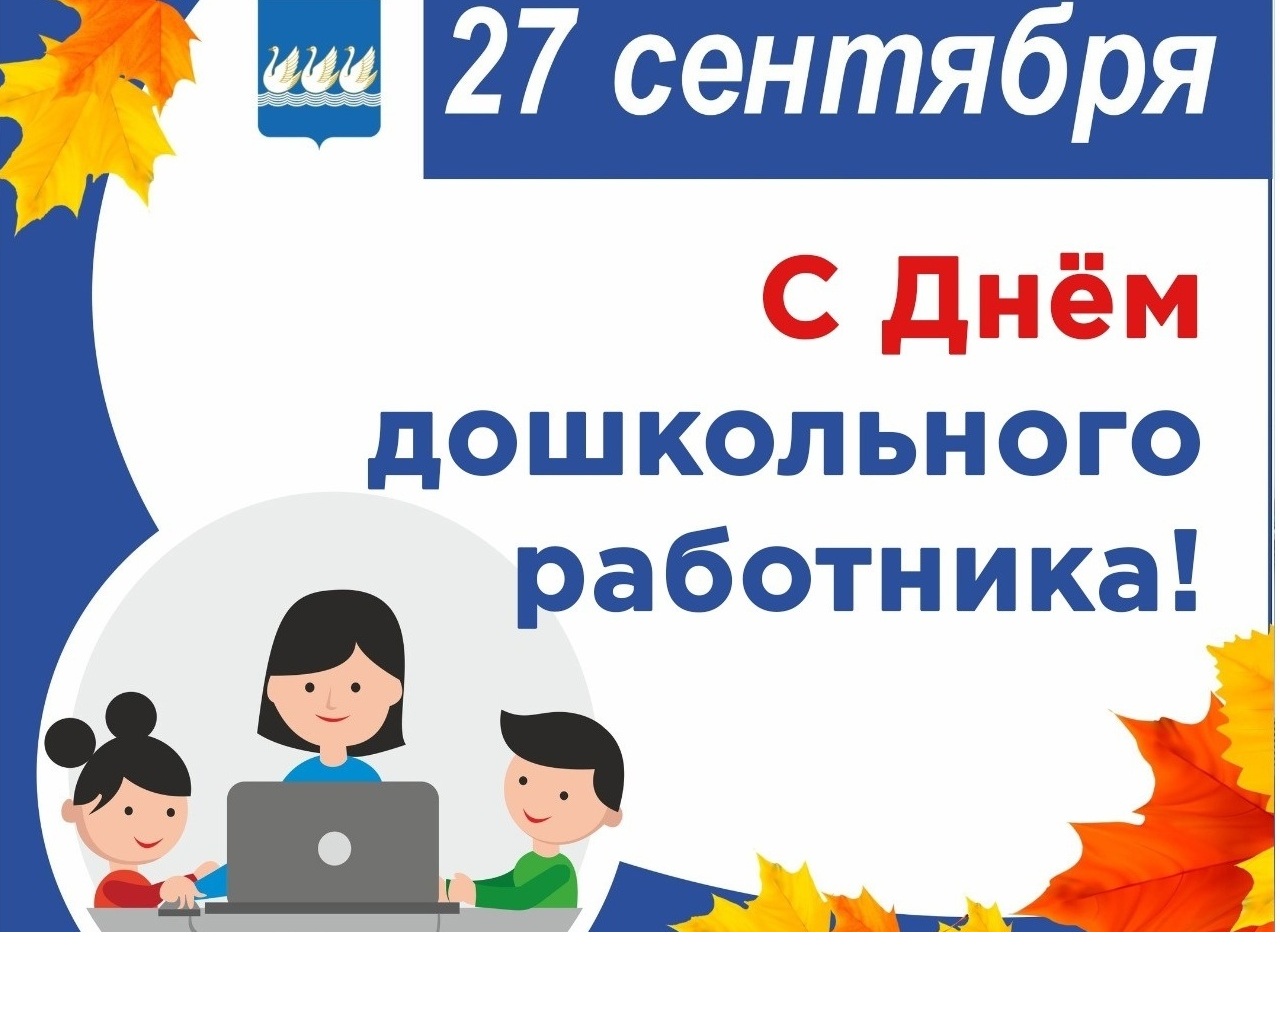 27 сентября - День дошкольного работника